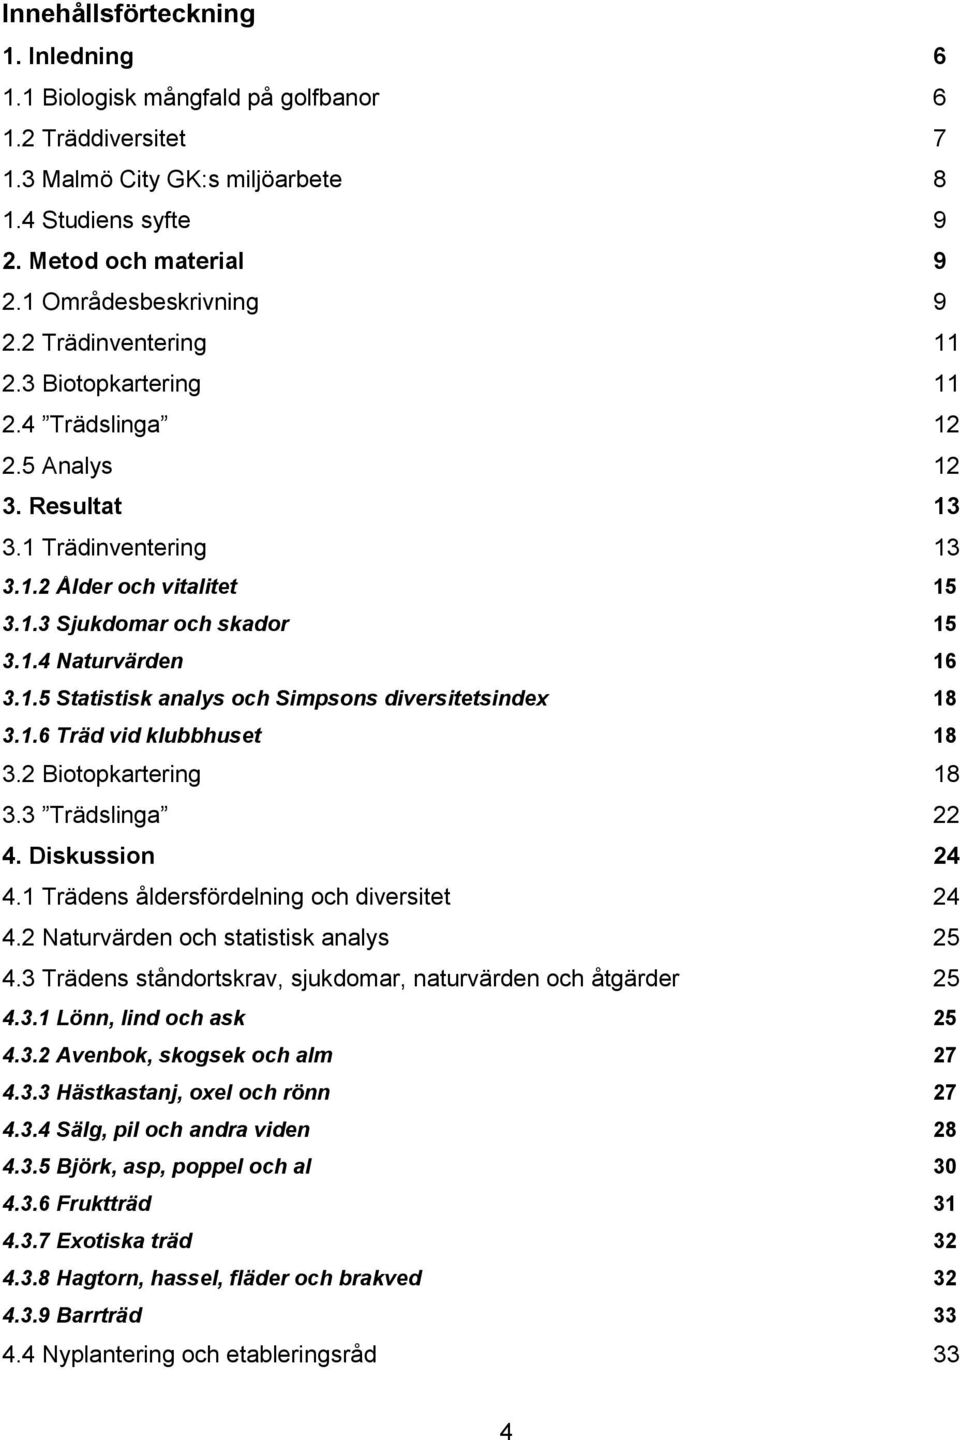 1.4 Naturvärden 16 3.1.5 Statistisk analys och Simpsons diversitetsindex 18 3.1.6 Träd vid klubbhuset 18 3.2 Biotopkartering 18 3.3 Trädslinga 22 4. Diskussion 24 4.